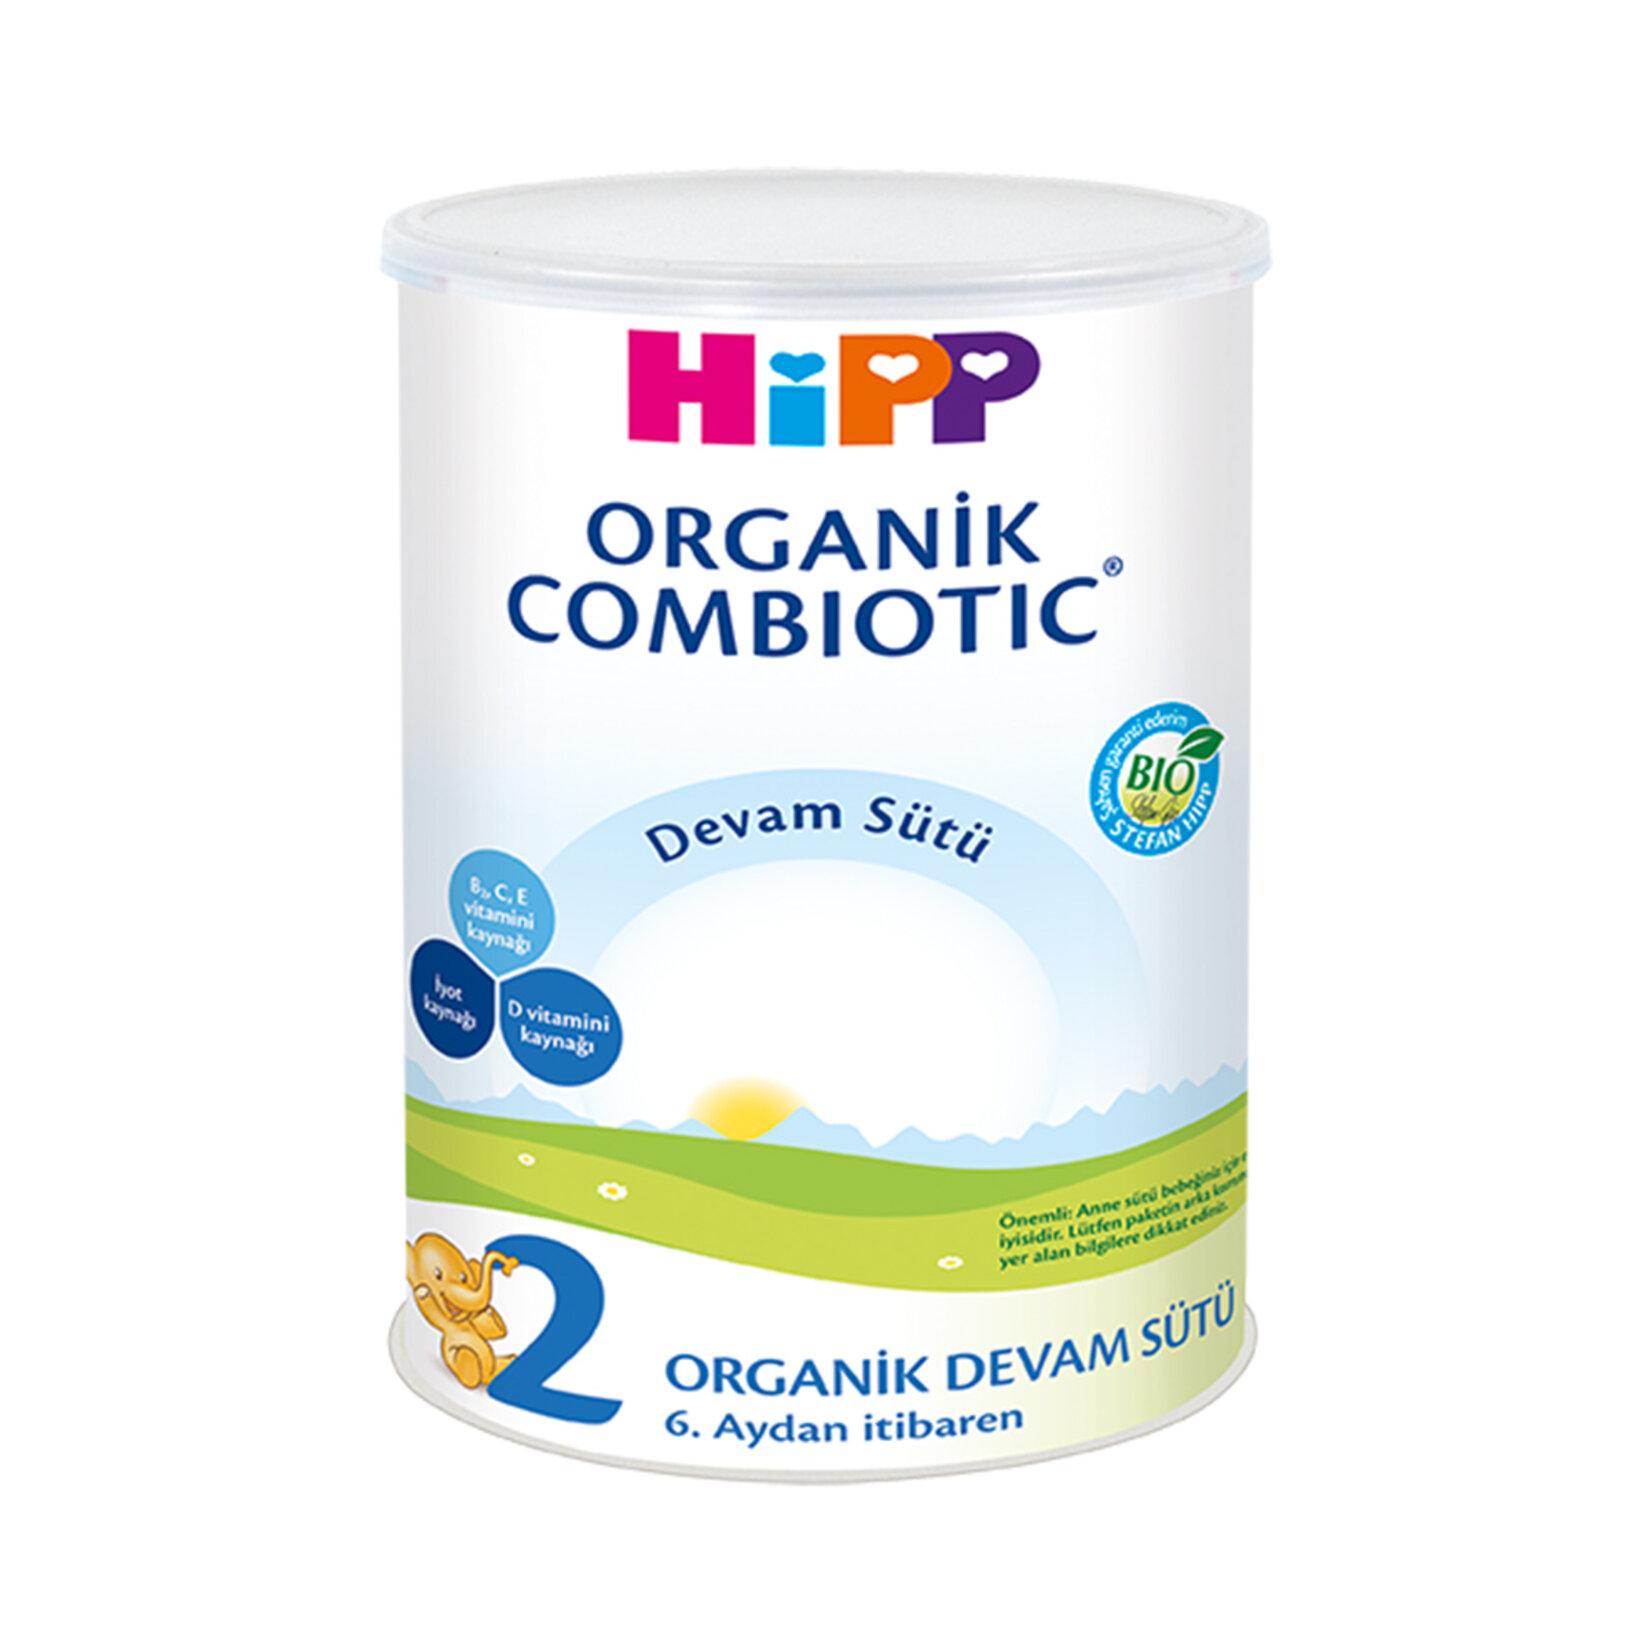 Hipp 2 Organik Combiotic Devam Sütü 350 gr 2'li Paket